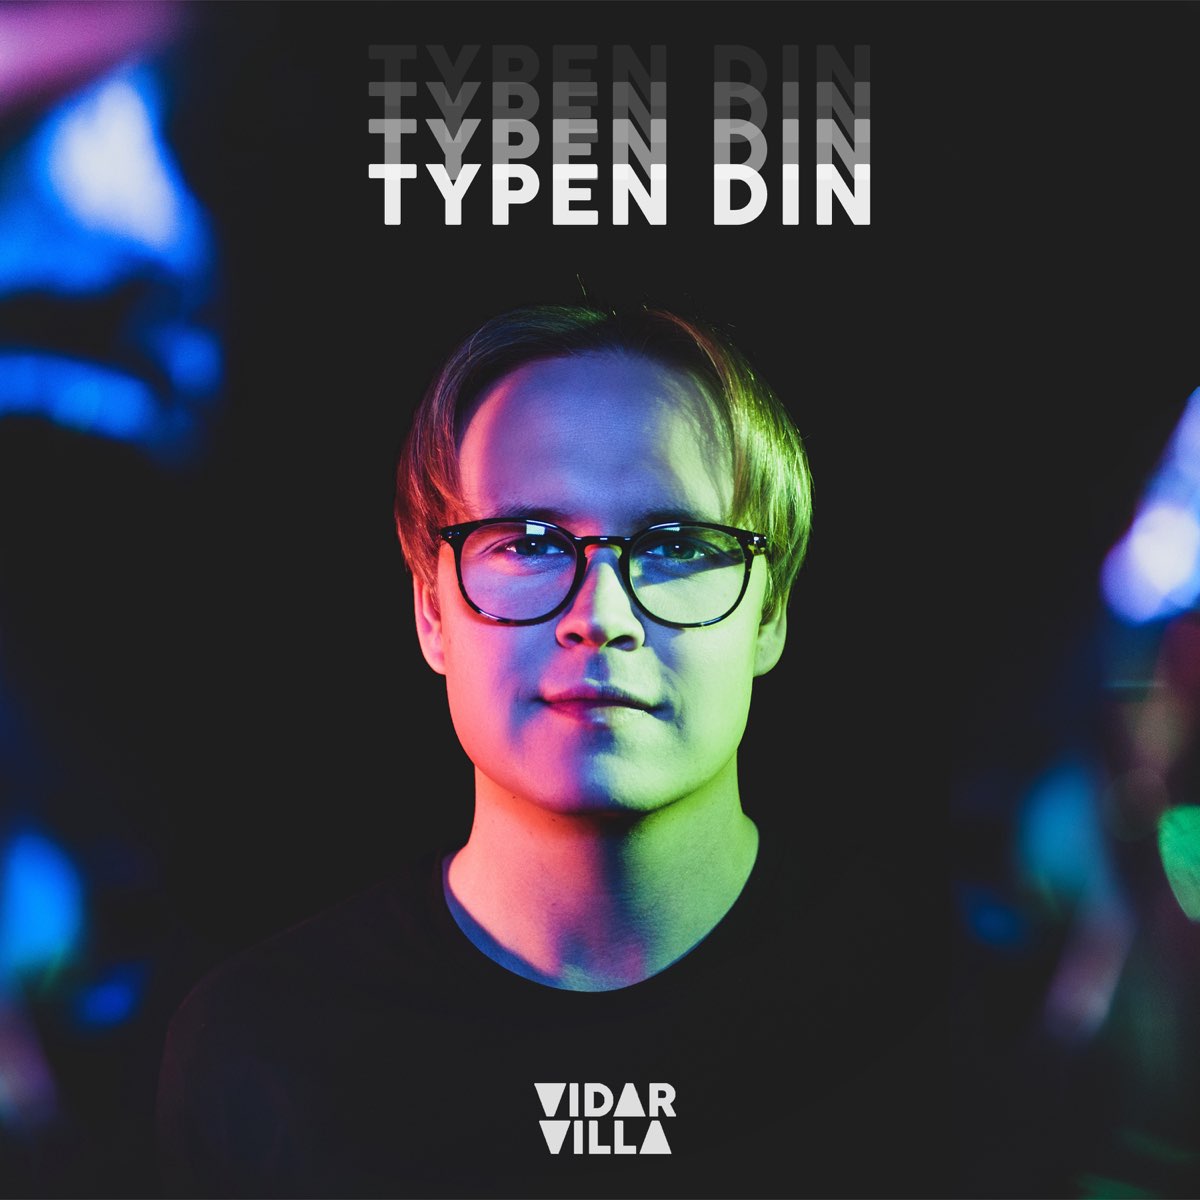 Typen Din - Single by Vidar Villa on Apple Music